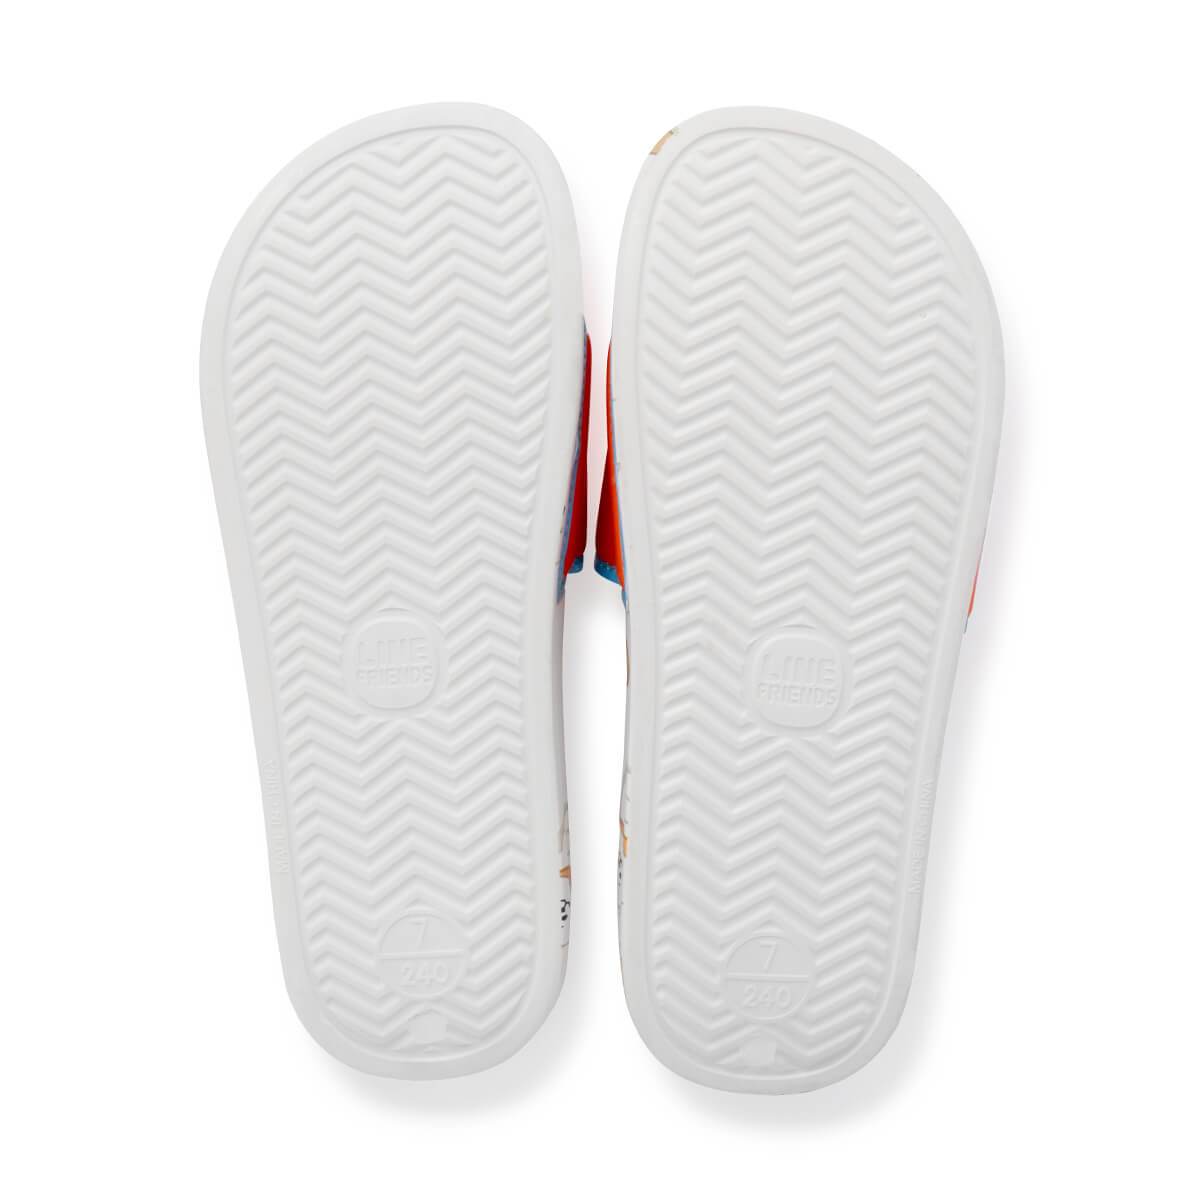 BT21 RJ Velcro slippers